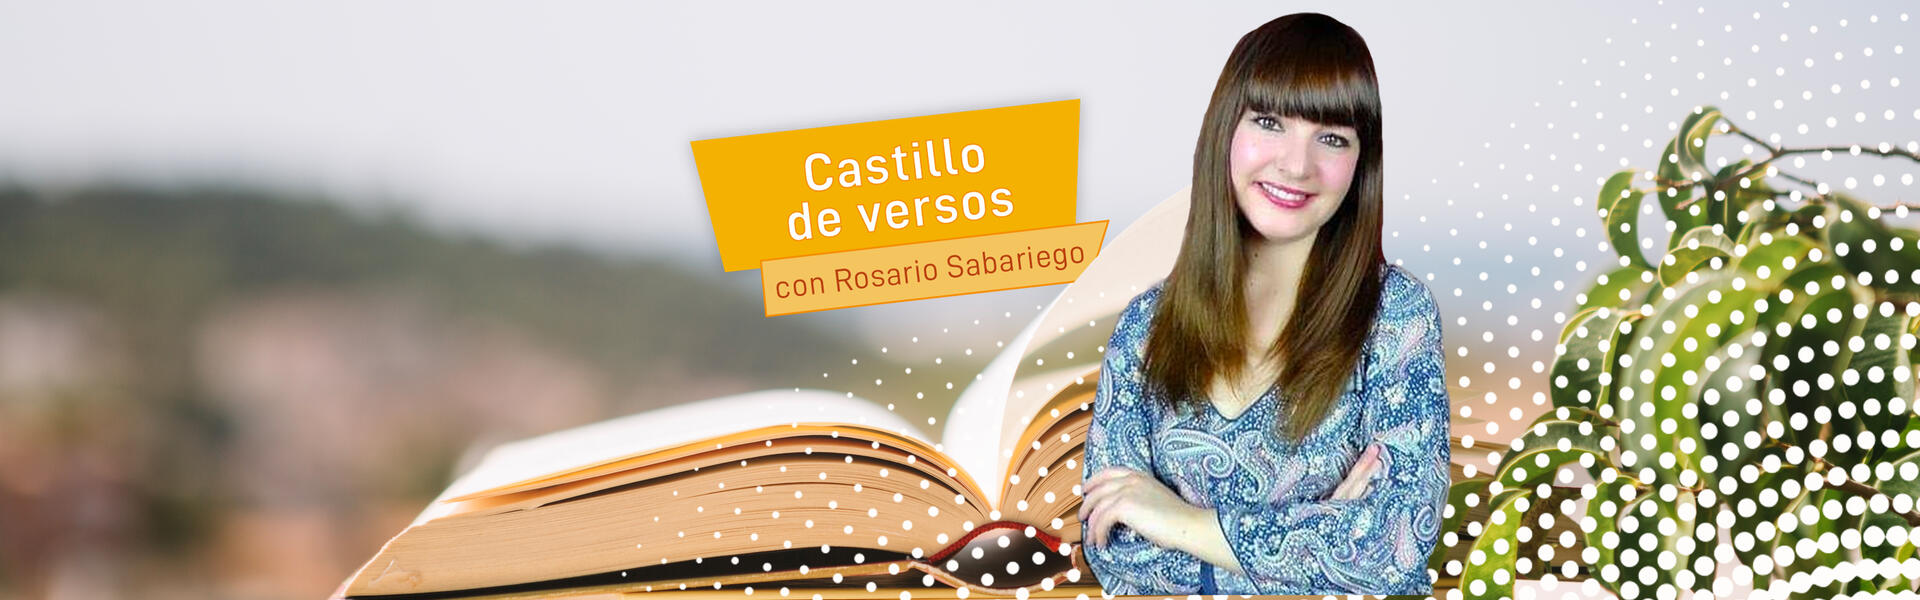 Castillo de Versos con Rosario Sabariego